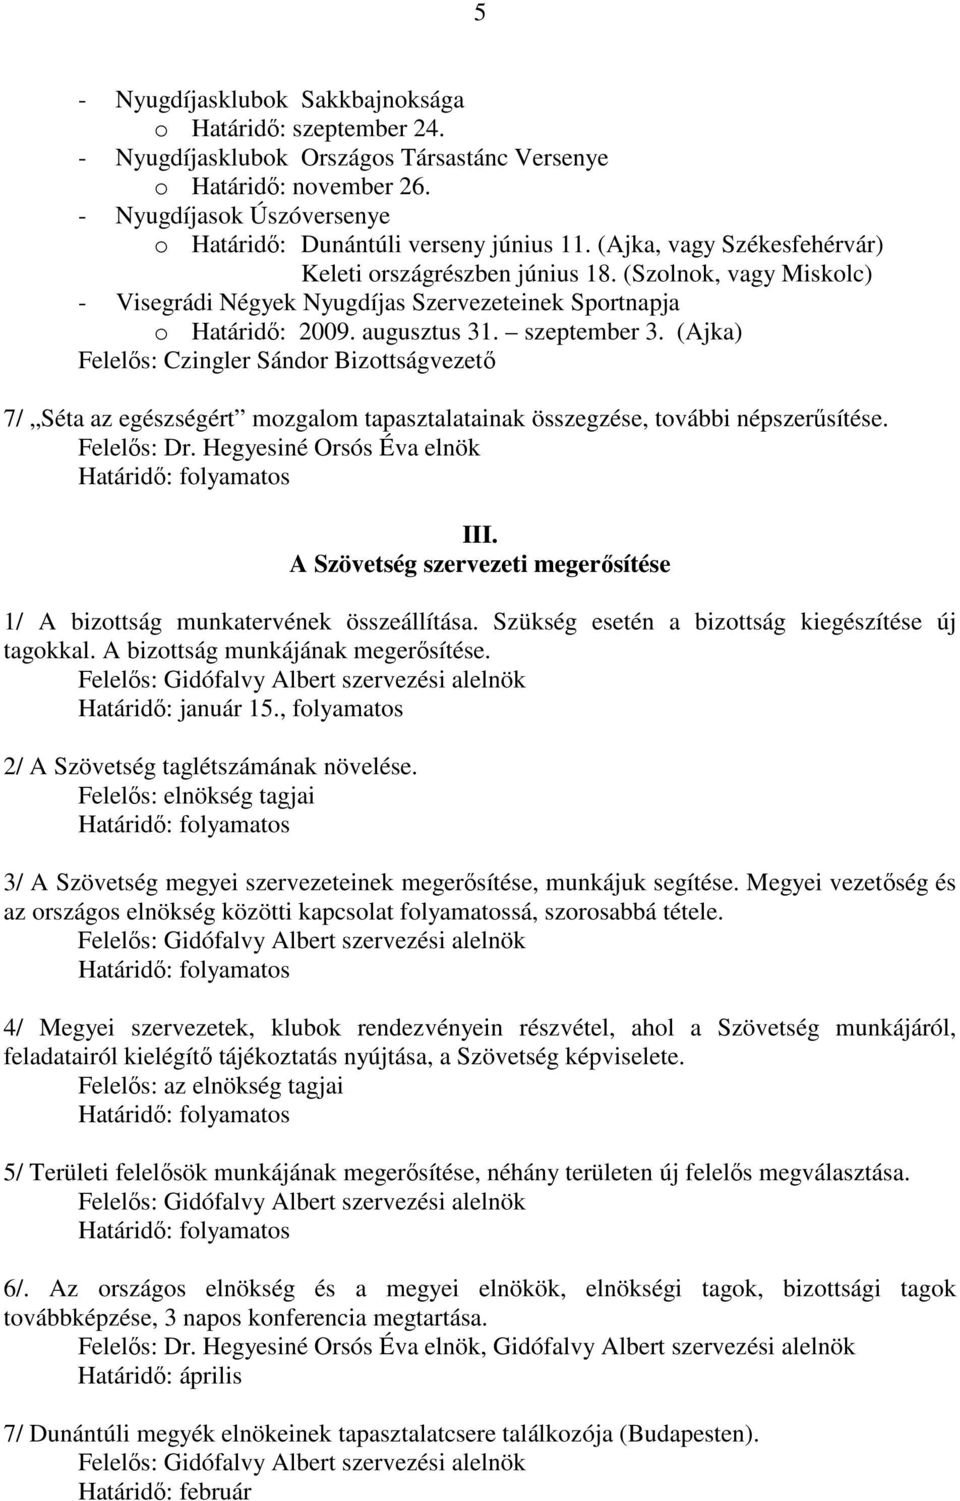 (Szolnok, vagy Miskolc) - Visegrádi Négyek Nyugdíjas Szervezeteinek Sportnapja o Határidı: 2009. augusztus 31. szeptember 3.